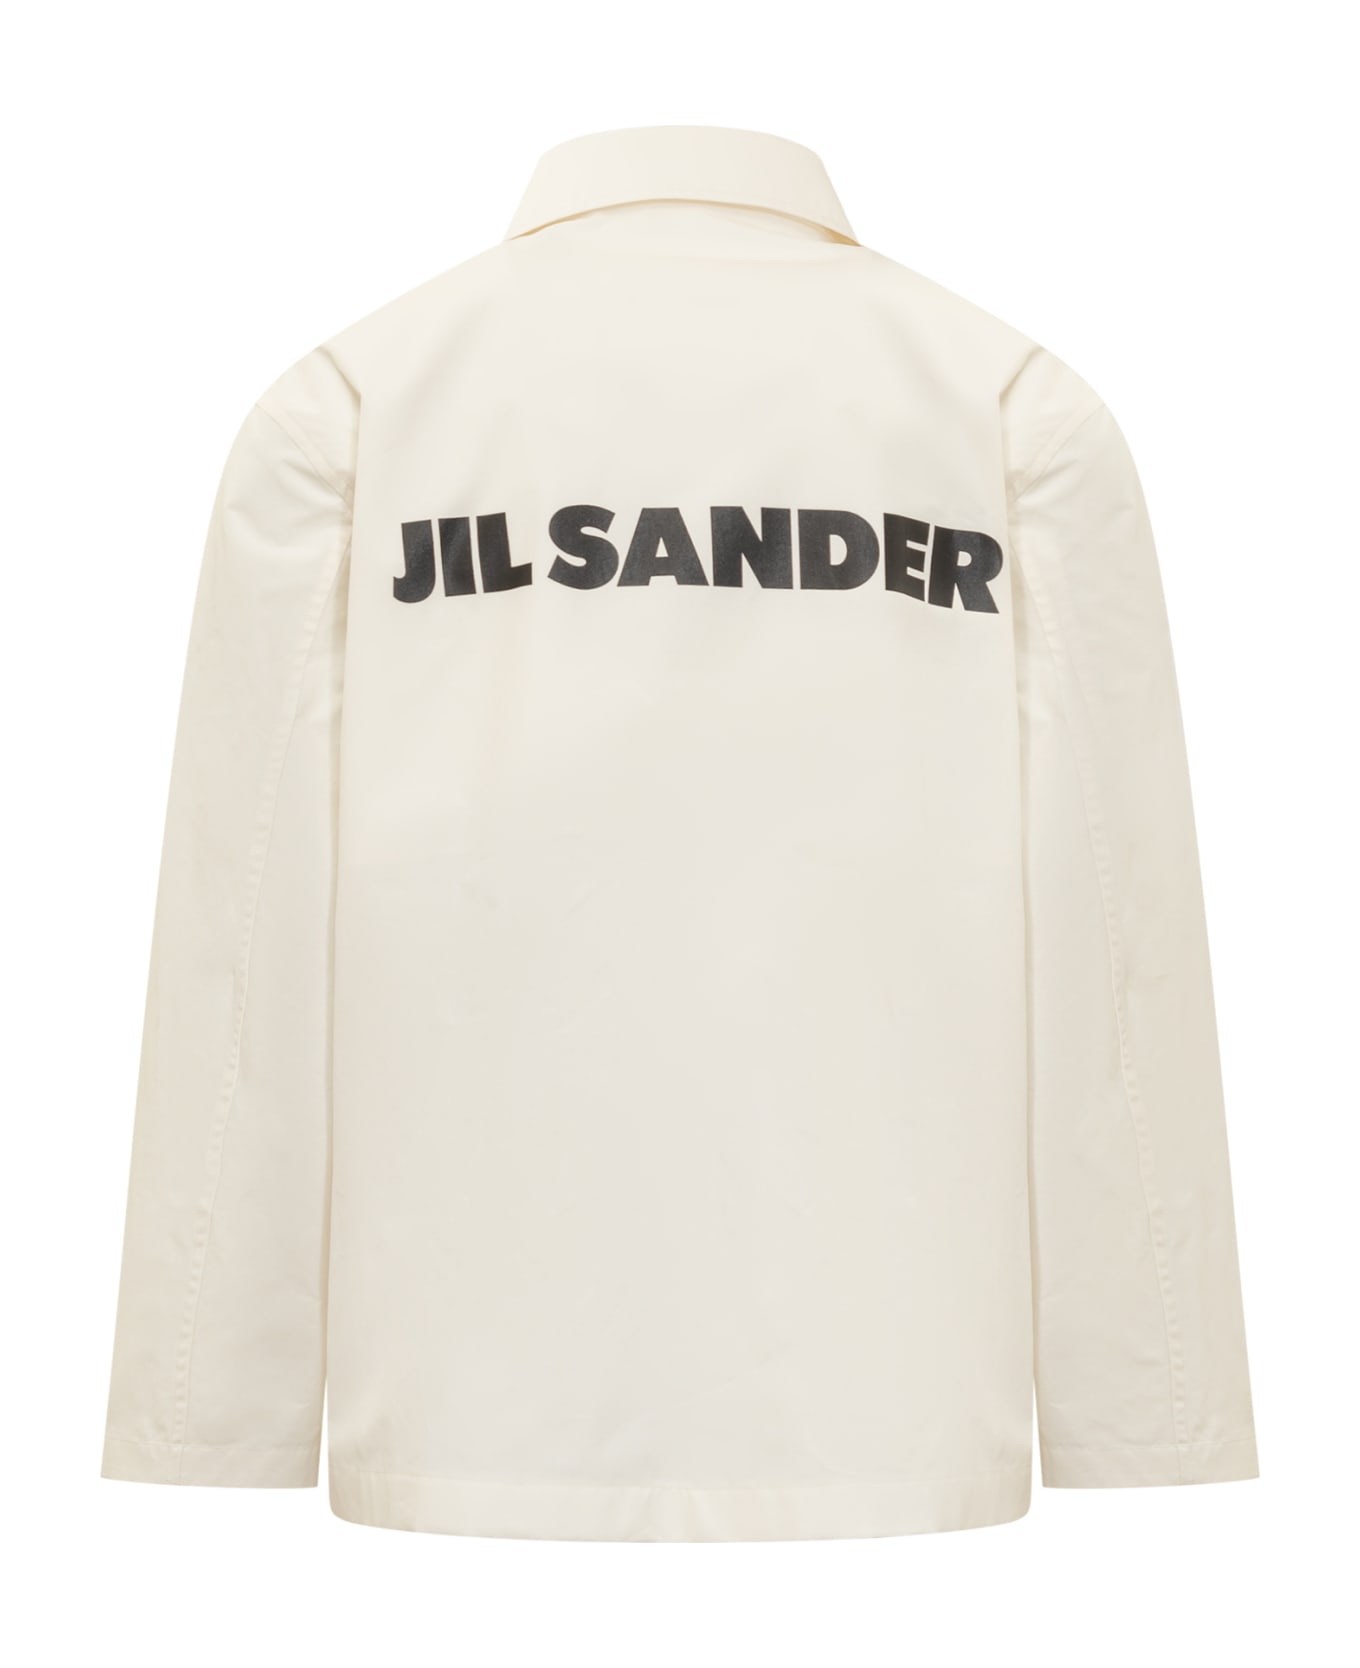 Jil Sander 03 Blouson - ANTIQUE WHITE ジャケット